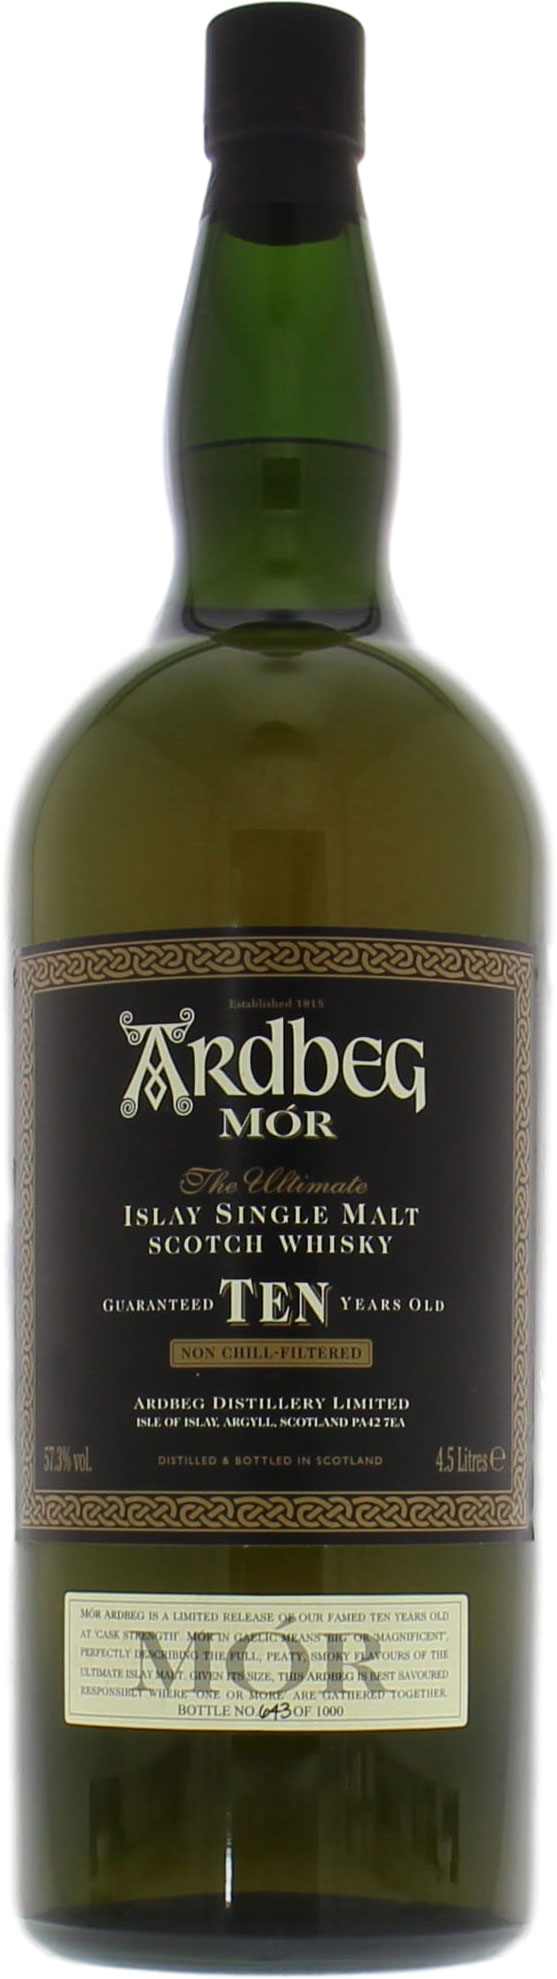 Ardbeg - Mór 10 Years Old 57.3% 1997